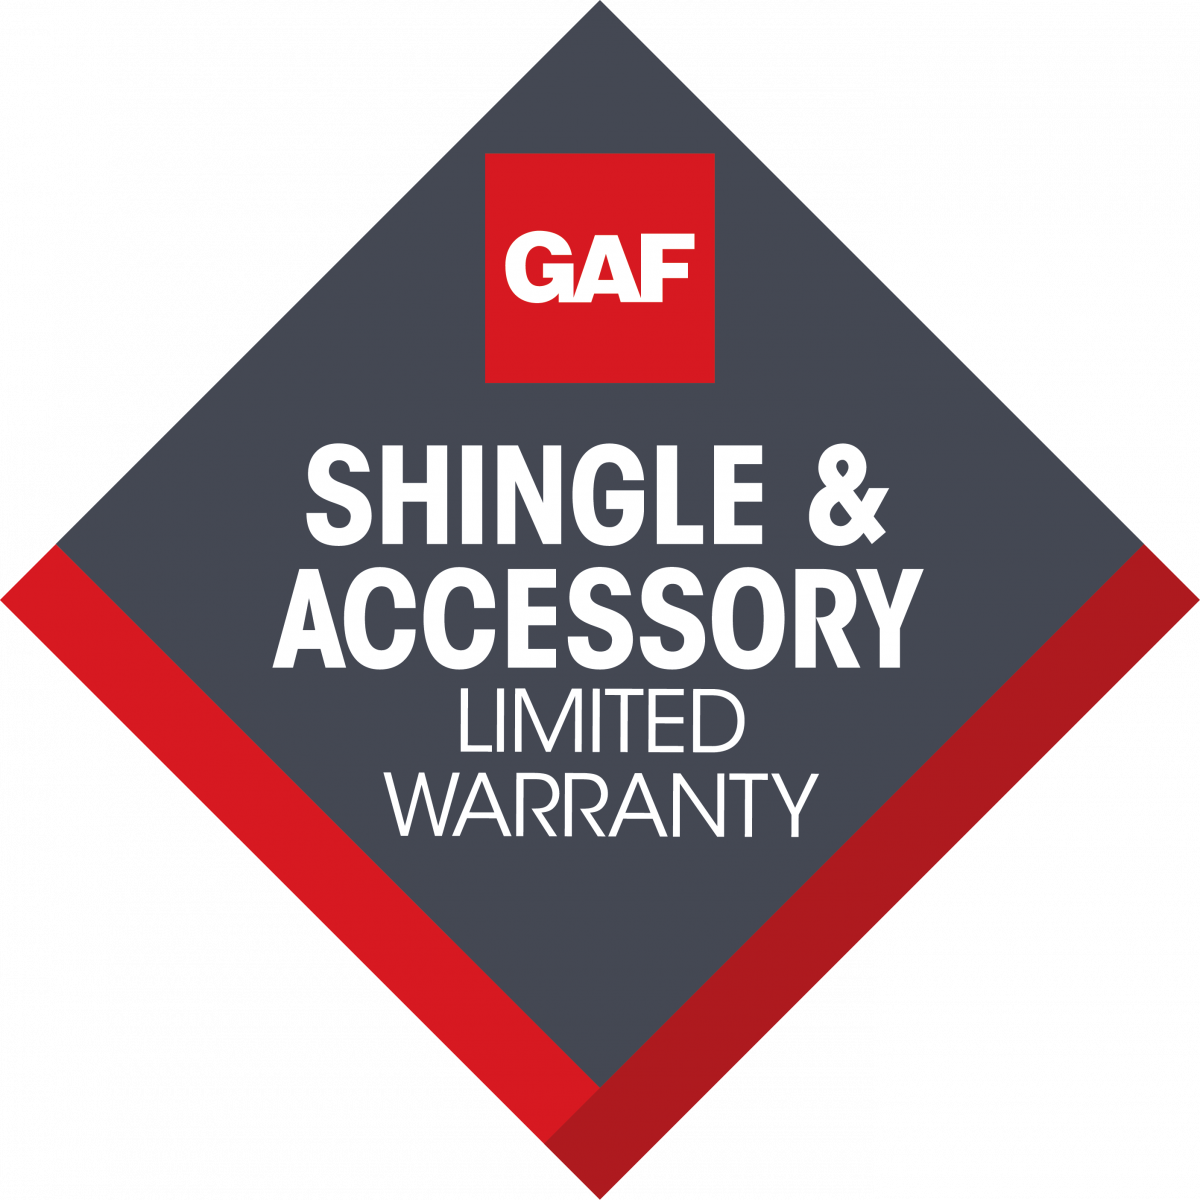 GAF Shingle & Accessory Limited Warranty